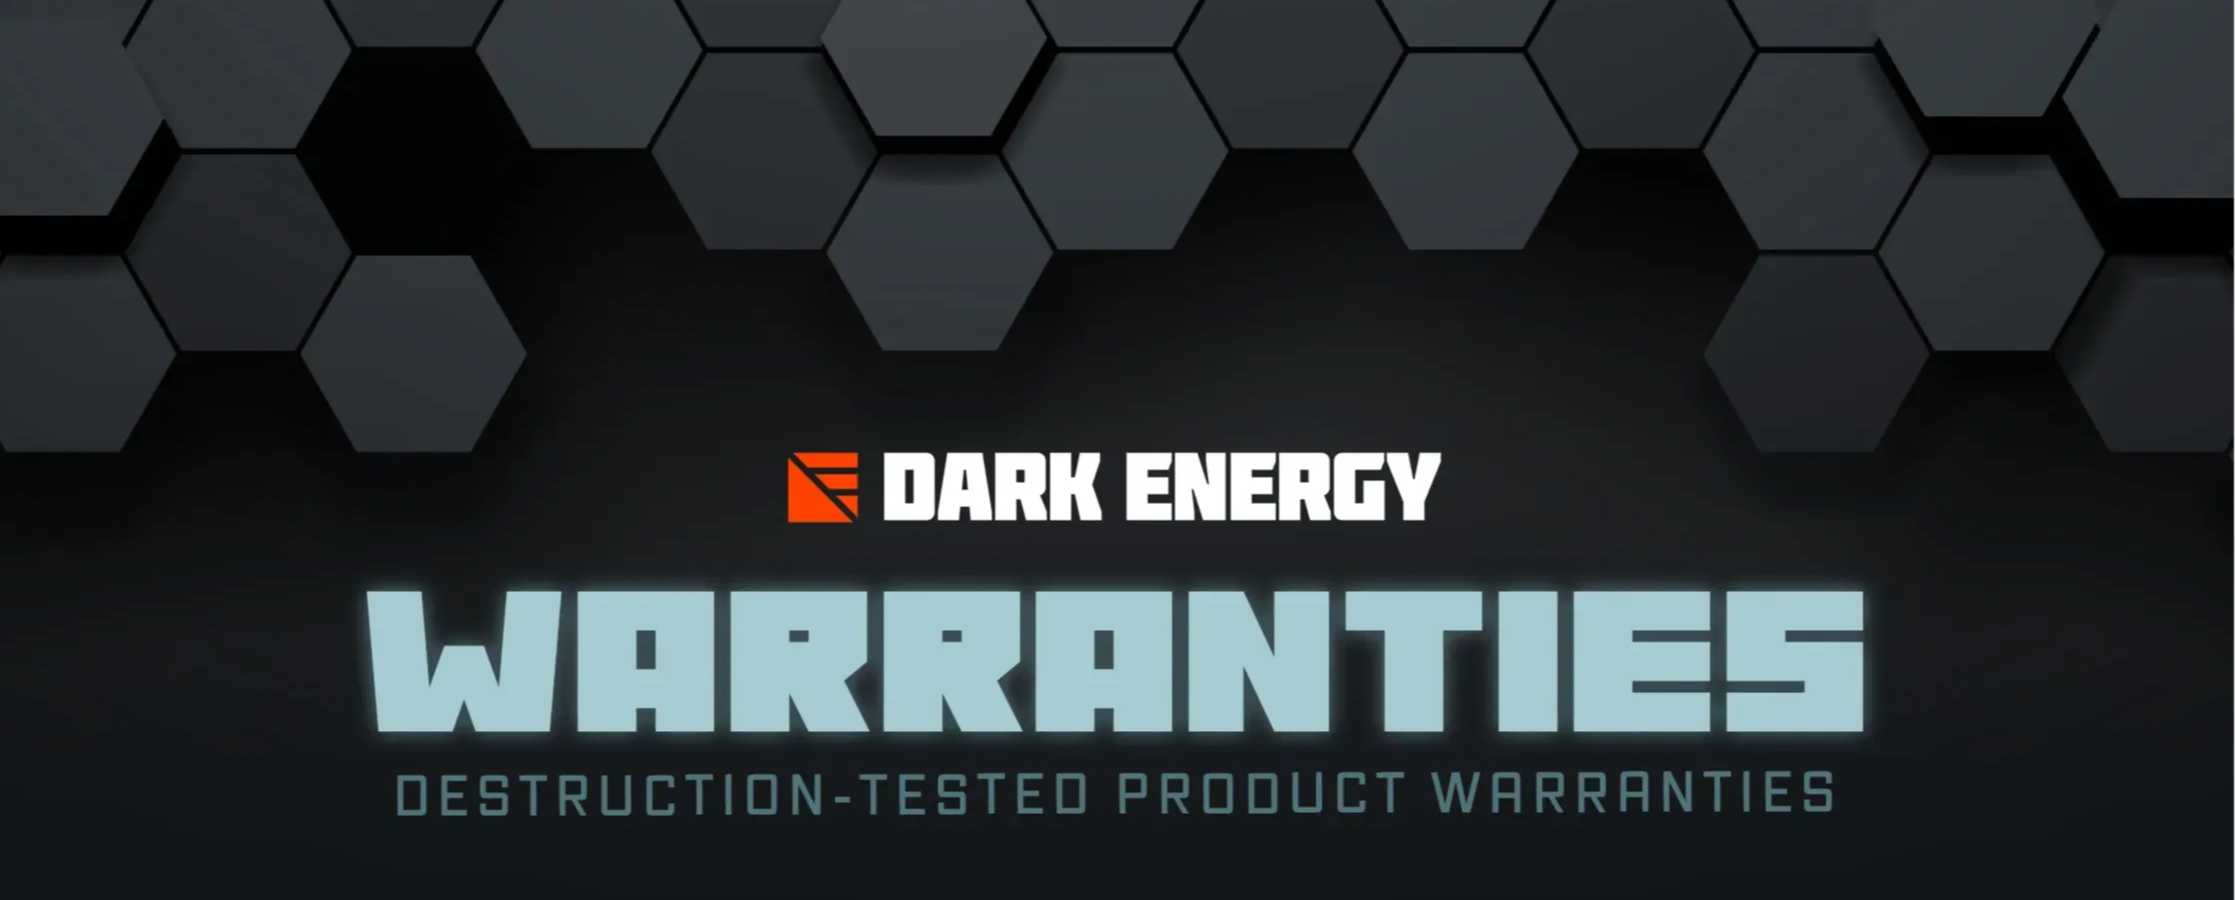 Dark Energy product warranties.